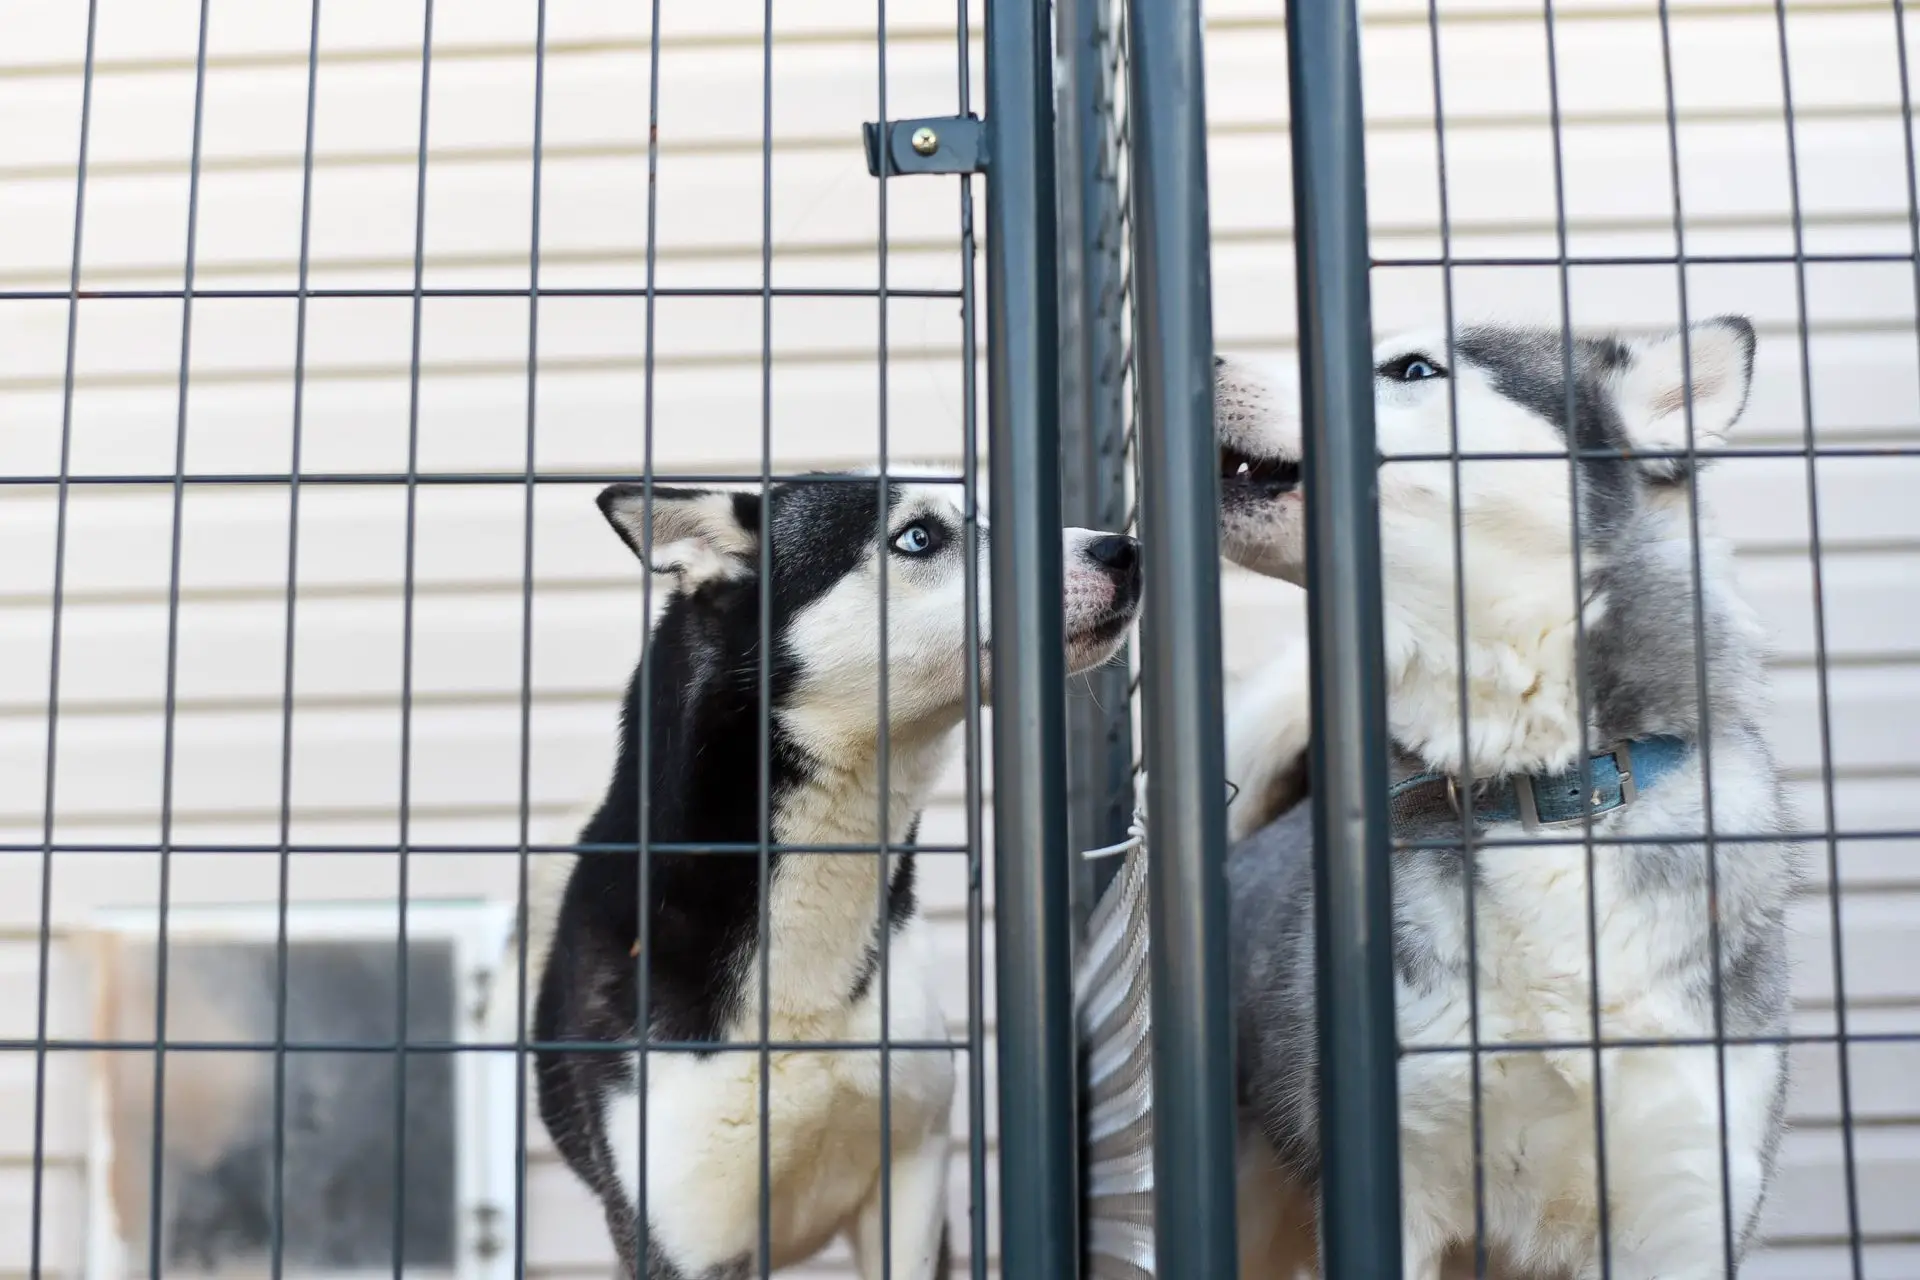 dog shelter - dog abandonment increases